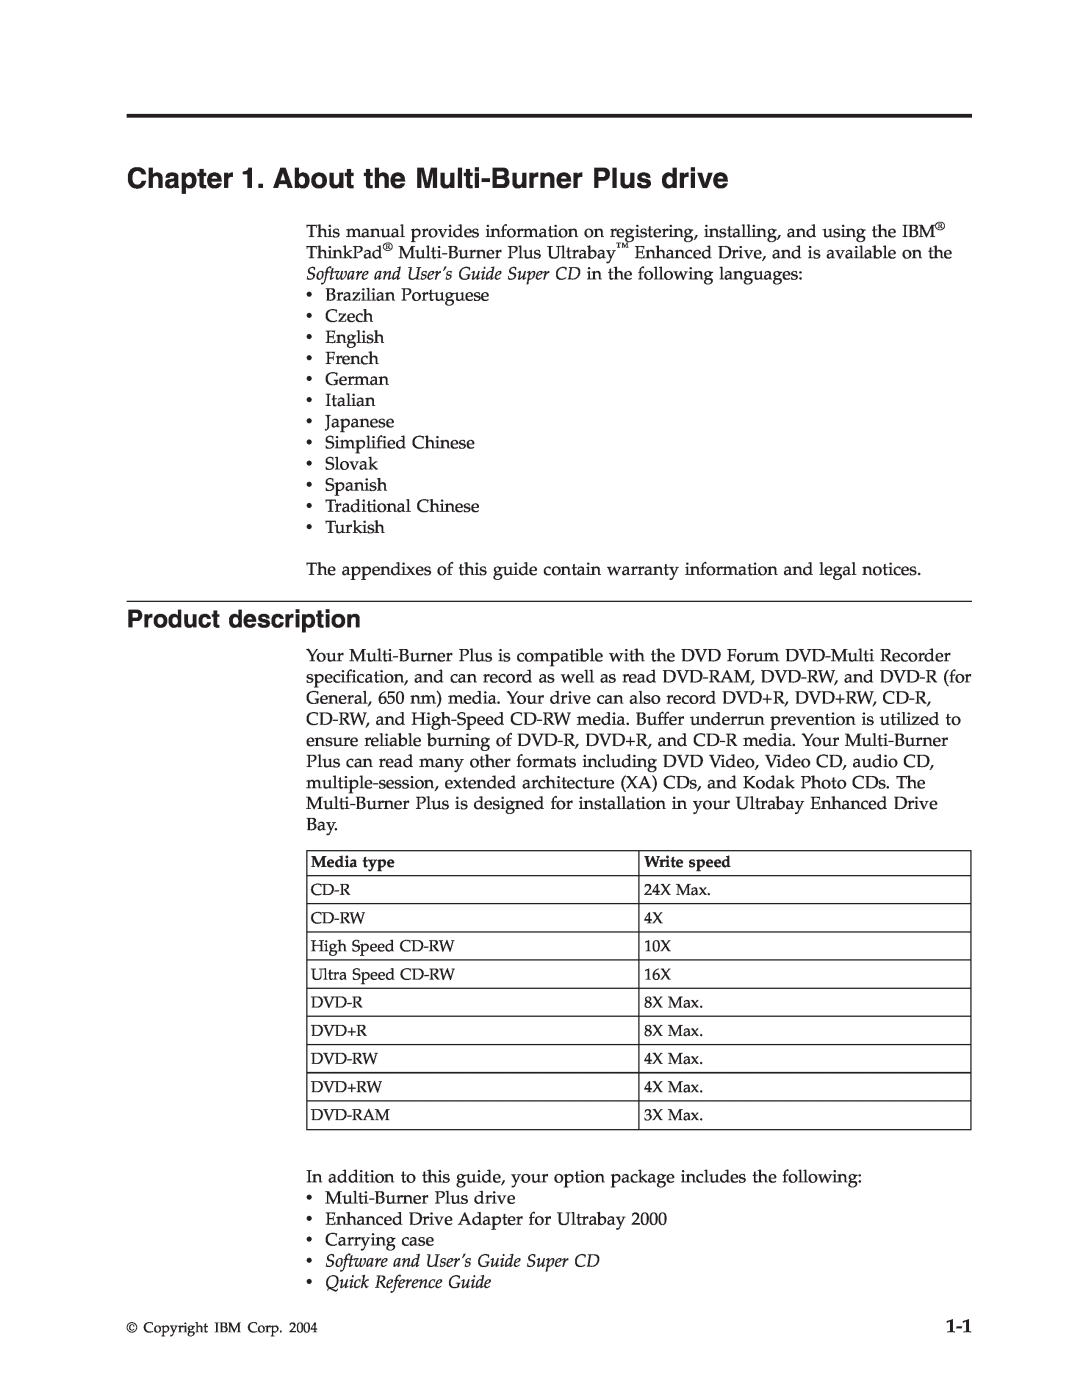 IBM 73P3315 manual About the Multi-Burner Plus drive, Product description 